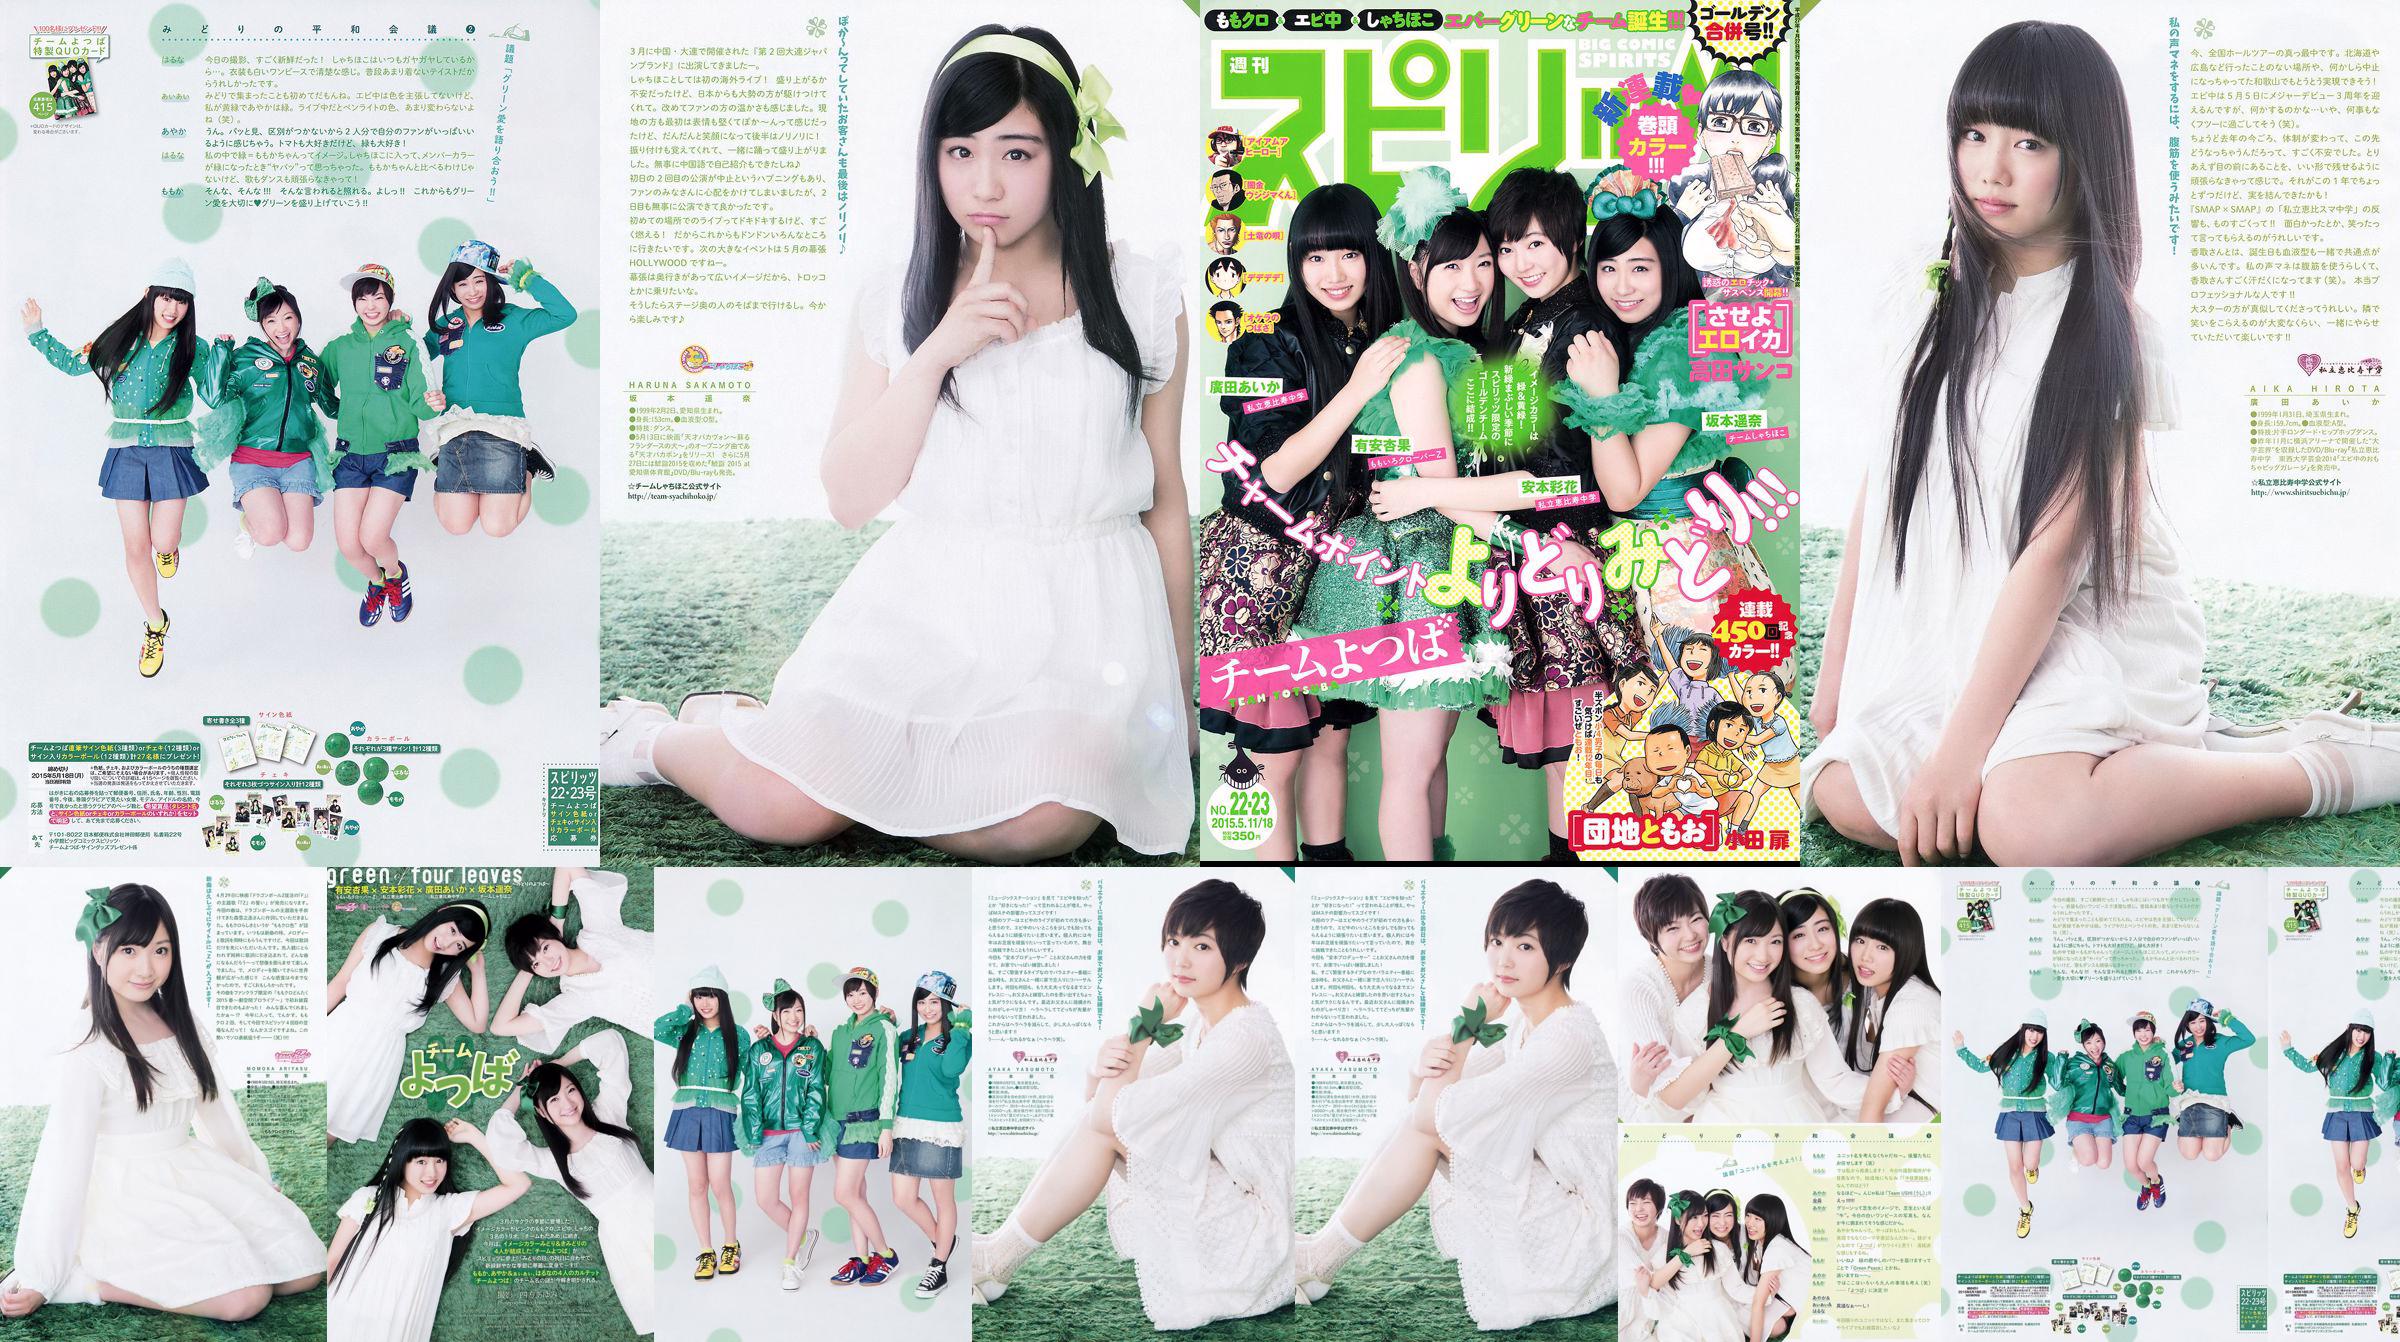 [Weekly Big Comic Spirits] Ayaka Ayana Ayana Sakamoto Haruna Hirota 2015 No.22-23 Photo Magazine No.f9e311 Page 3